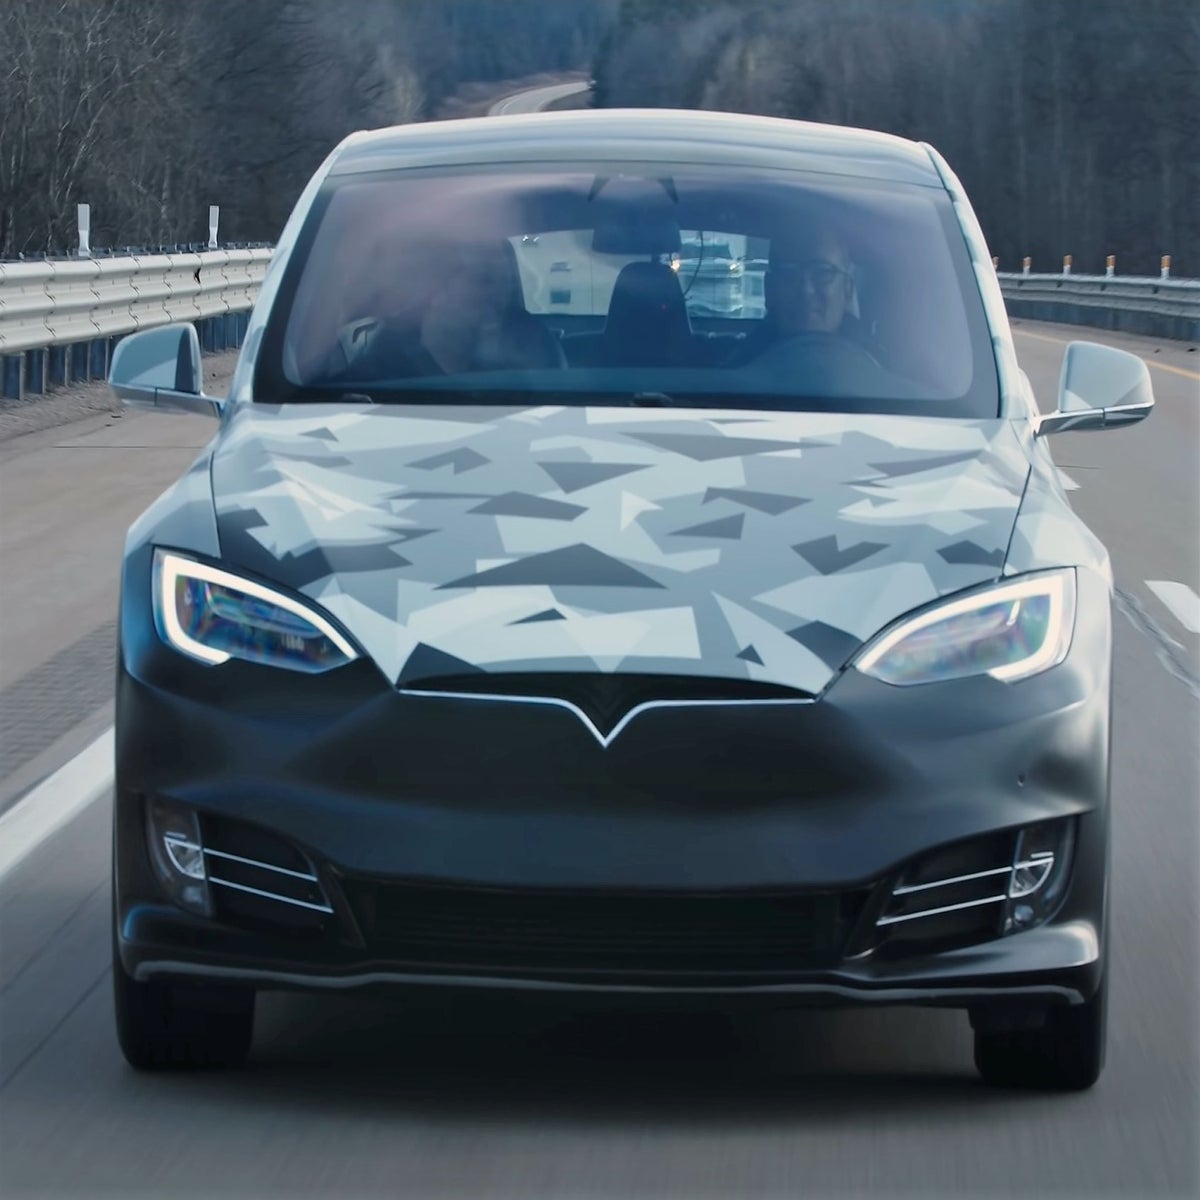 Un Tesla recorre 750 millas con una sola carga gracias a su batería | Español